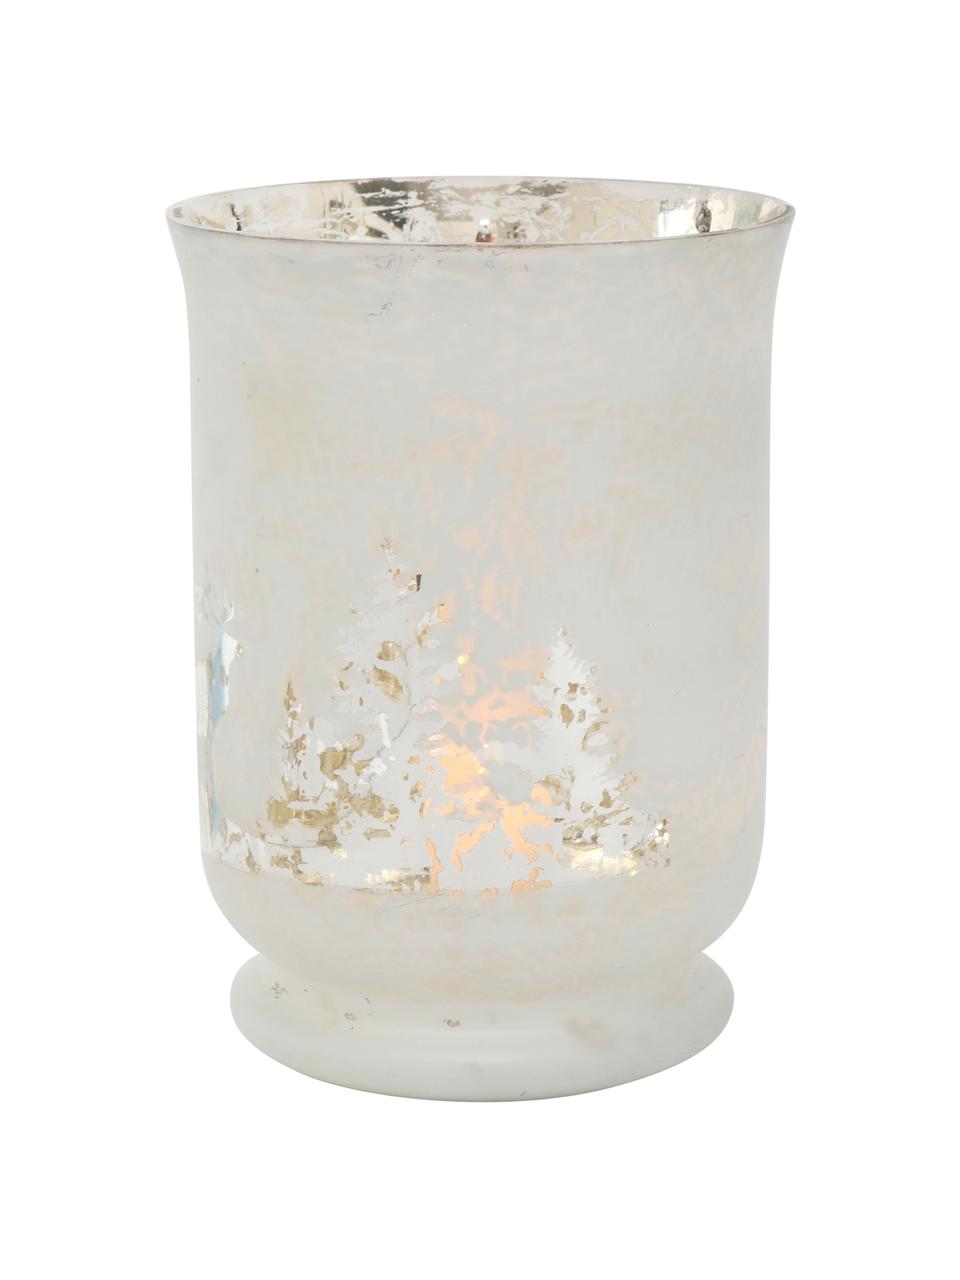 Windlicht Bonaparte, Glas, lackiert, Gebrochenes Weiss, Silberfarben, Ø 14 x H 19 cm